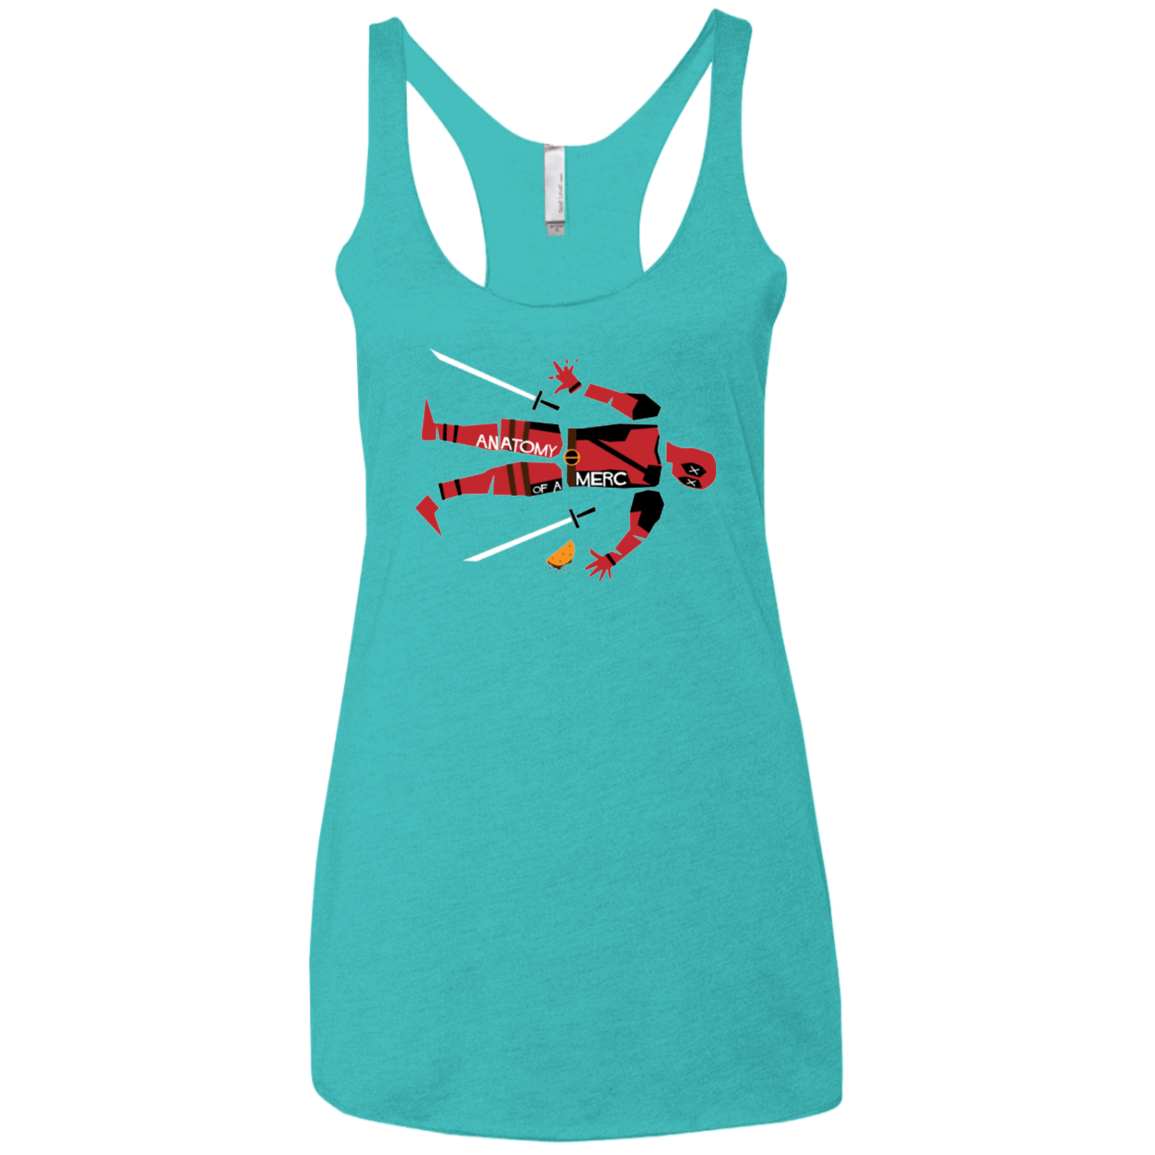 T-Shirts Tahiti Blue / X-Small Anatomy of A Merc Women's Triblend Racerback Tank